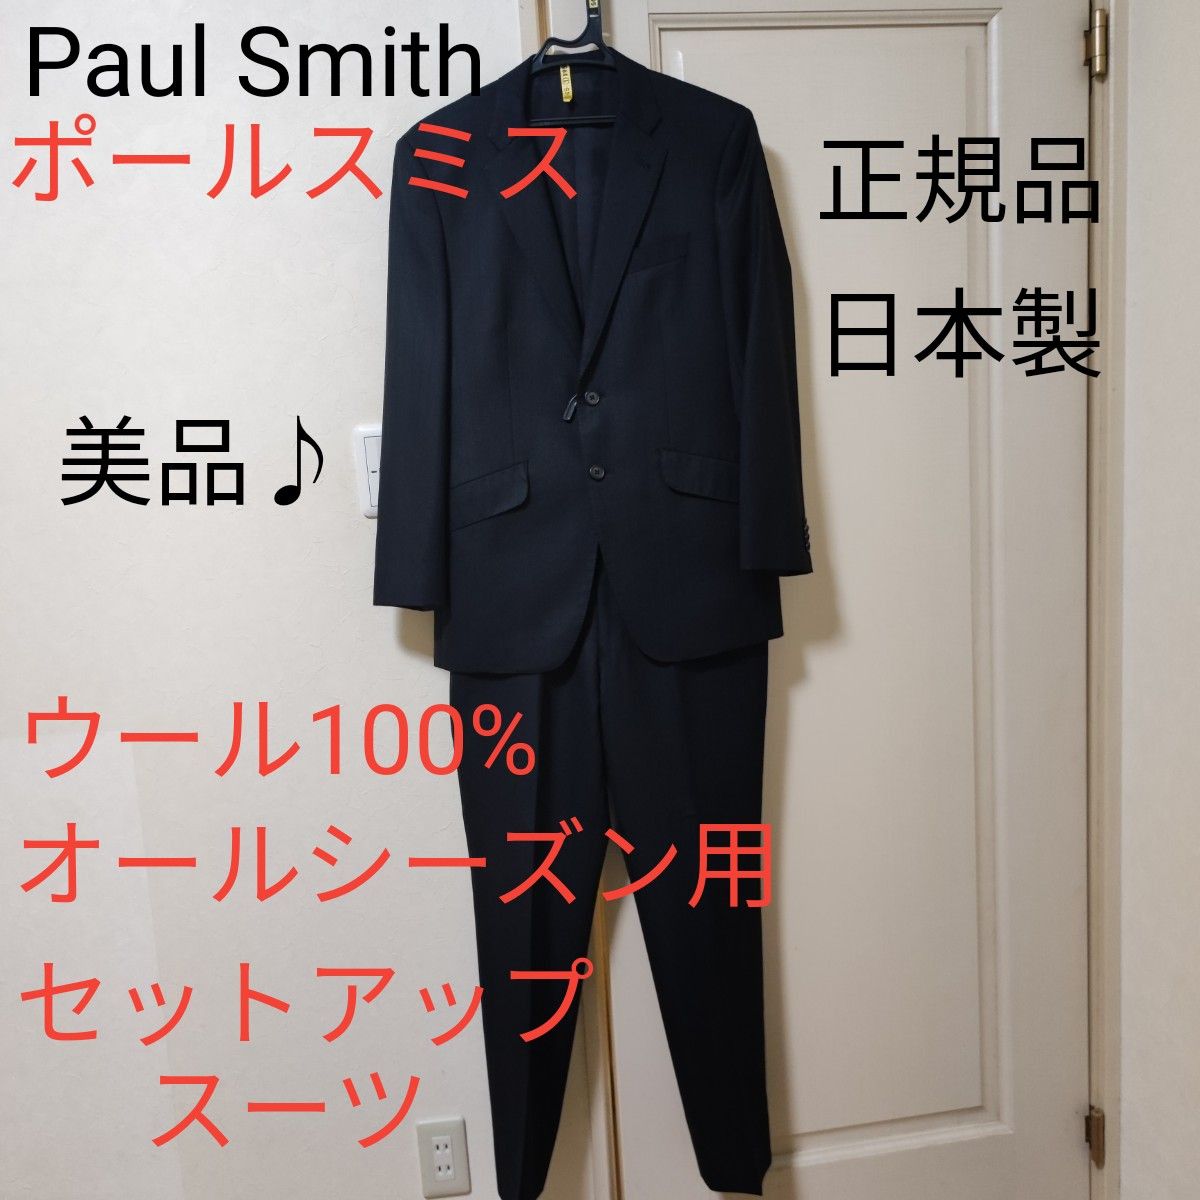 【美品･クリーニング済み】Paul Smith ポールスミス セットアップ スーツ ウール100% 卒業式や入学式にピッタリです♪